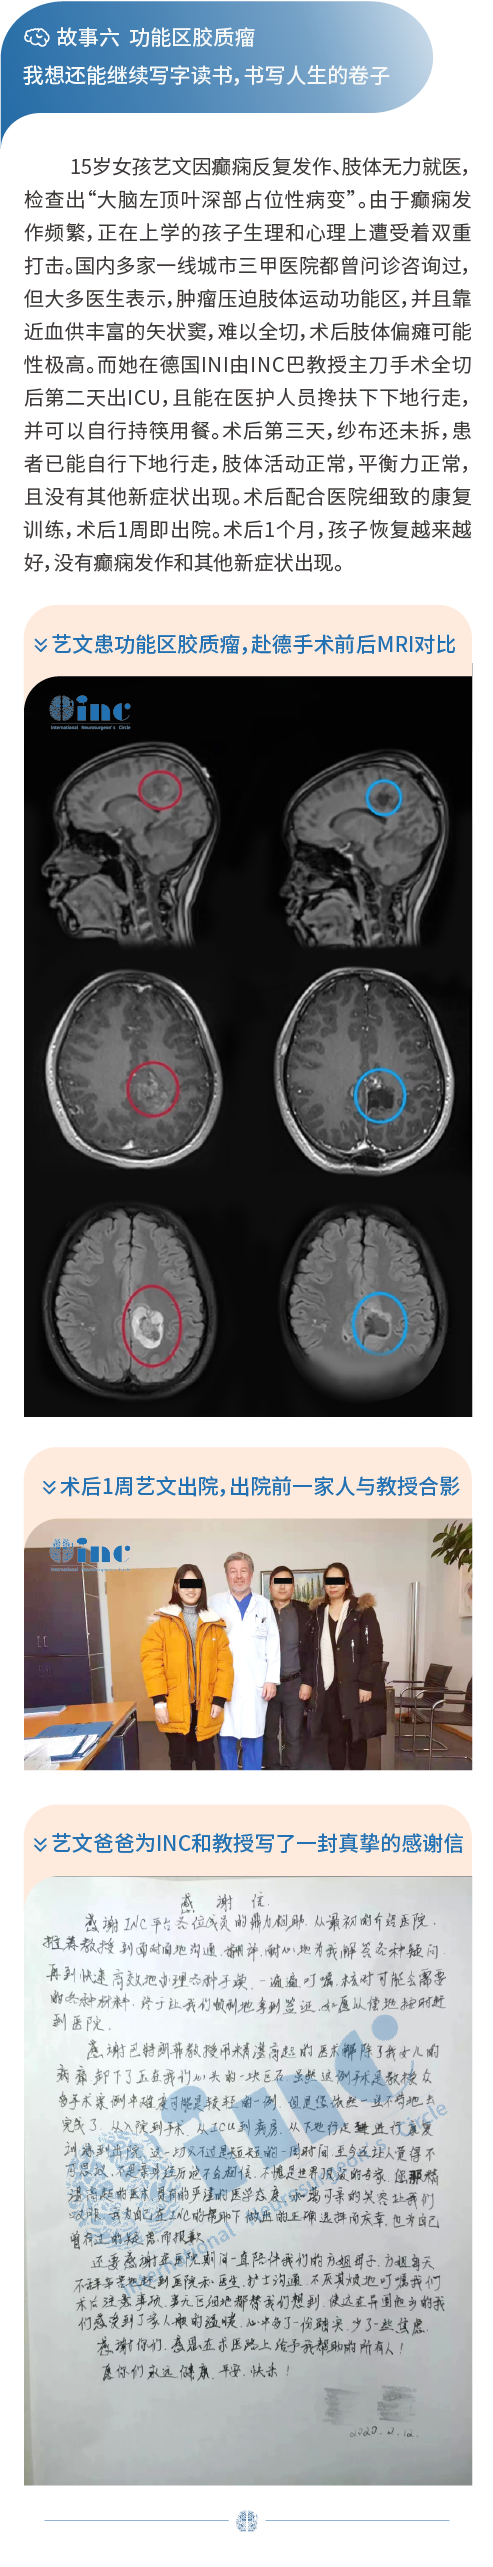 脑胶质瘤案例分享图片